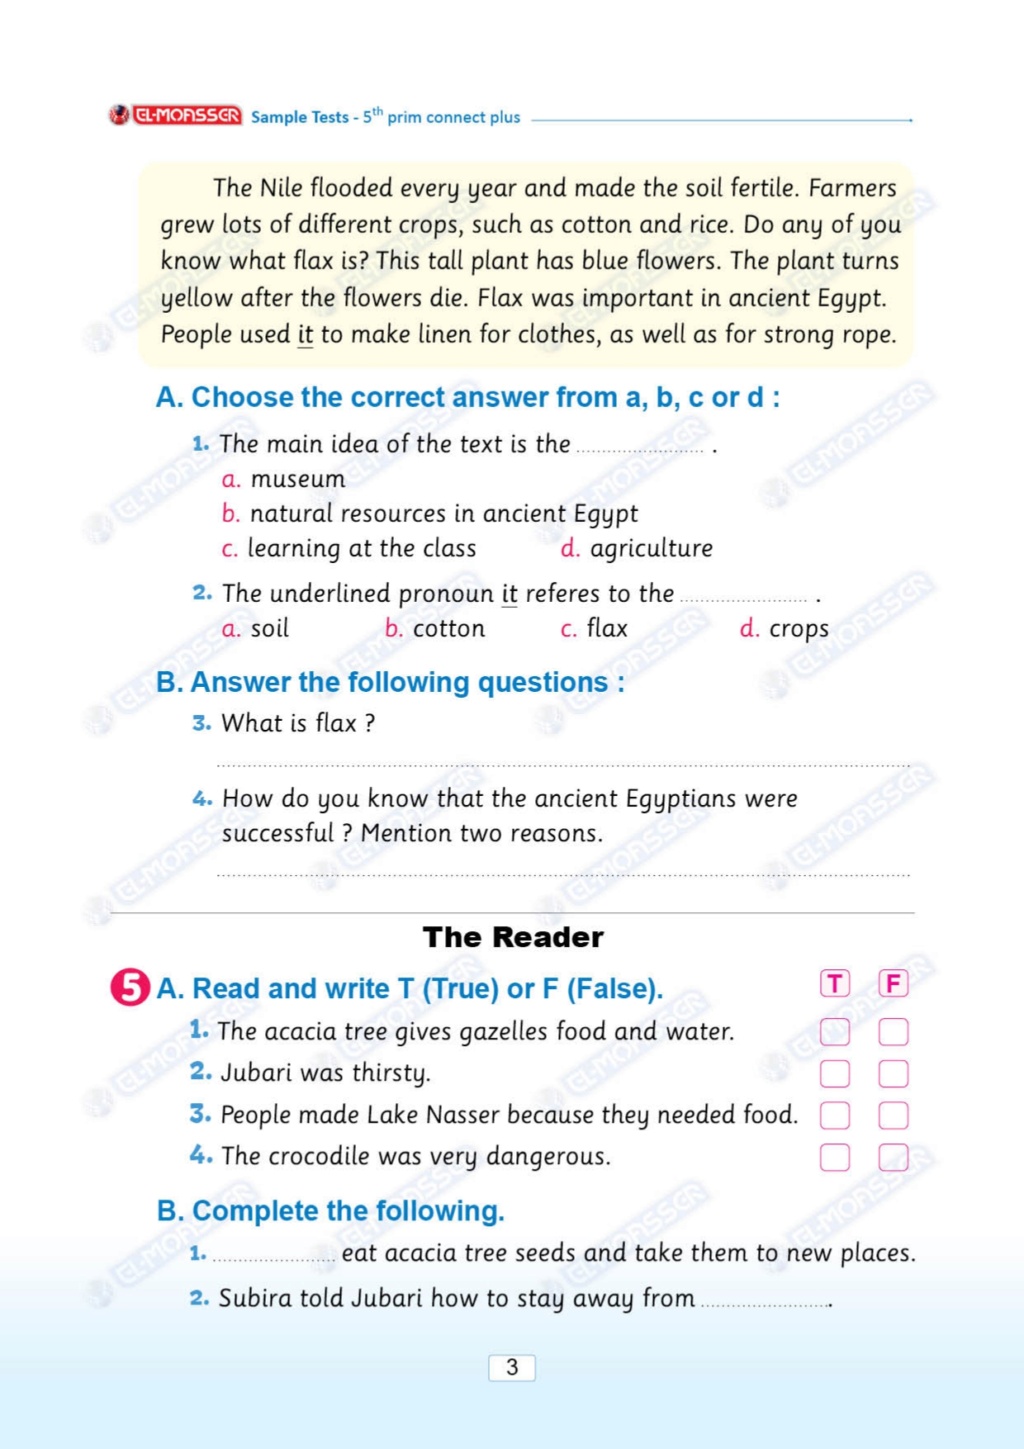 مراجعة مهمة لـ  Grade 5 منهج "Connect plus" شاملة كل أسئلة المنهج طبقًا لمواصفات الورقة الامتحانية 14109